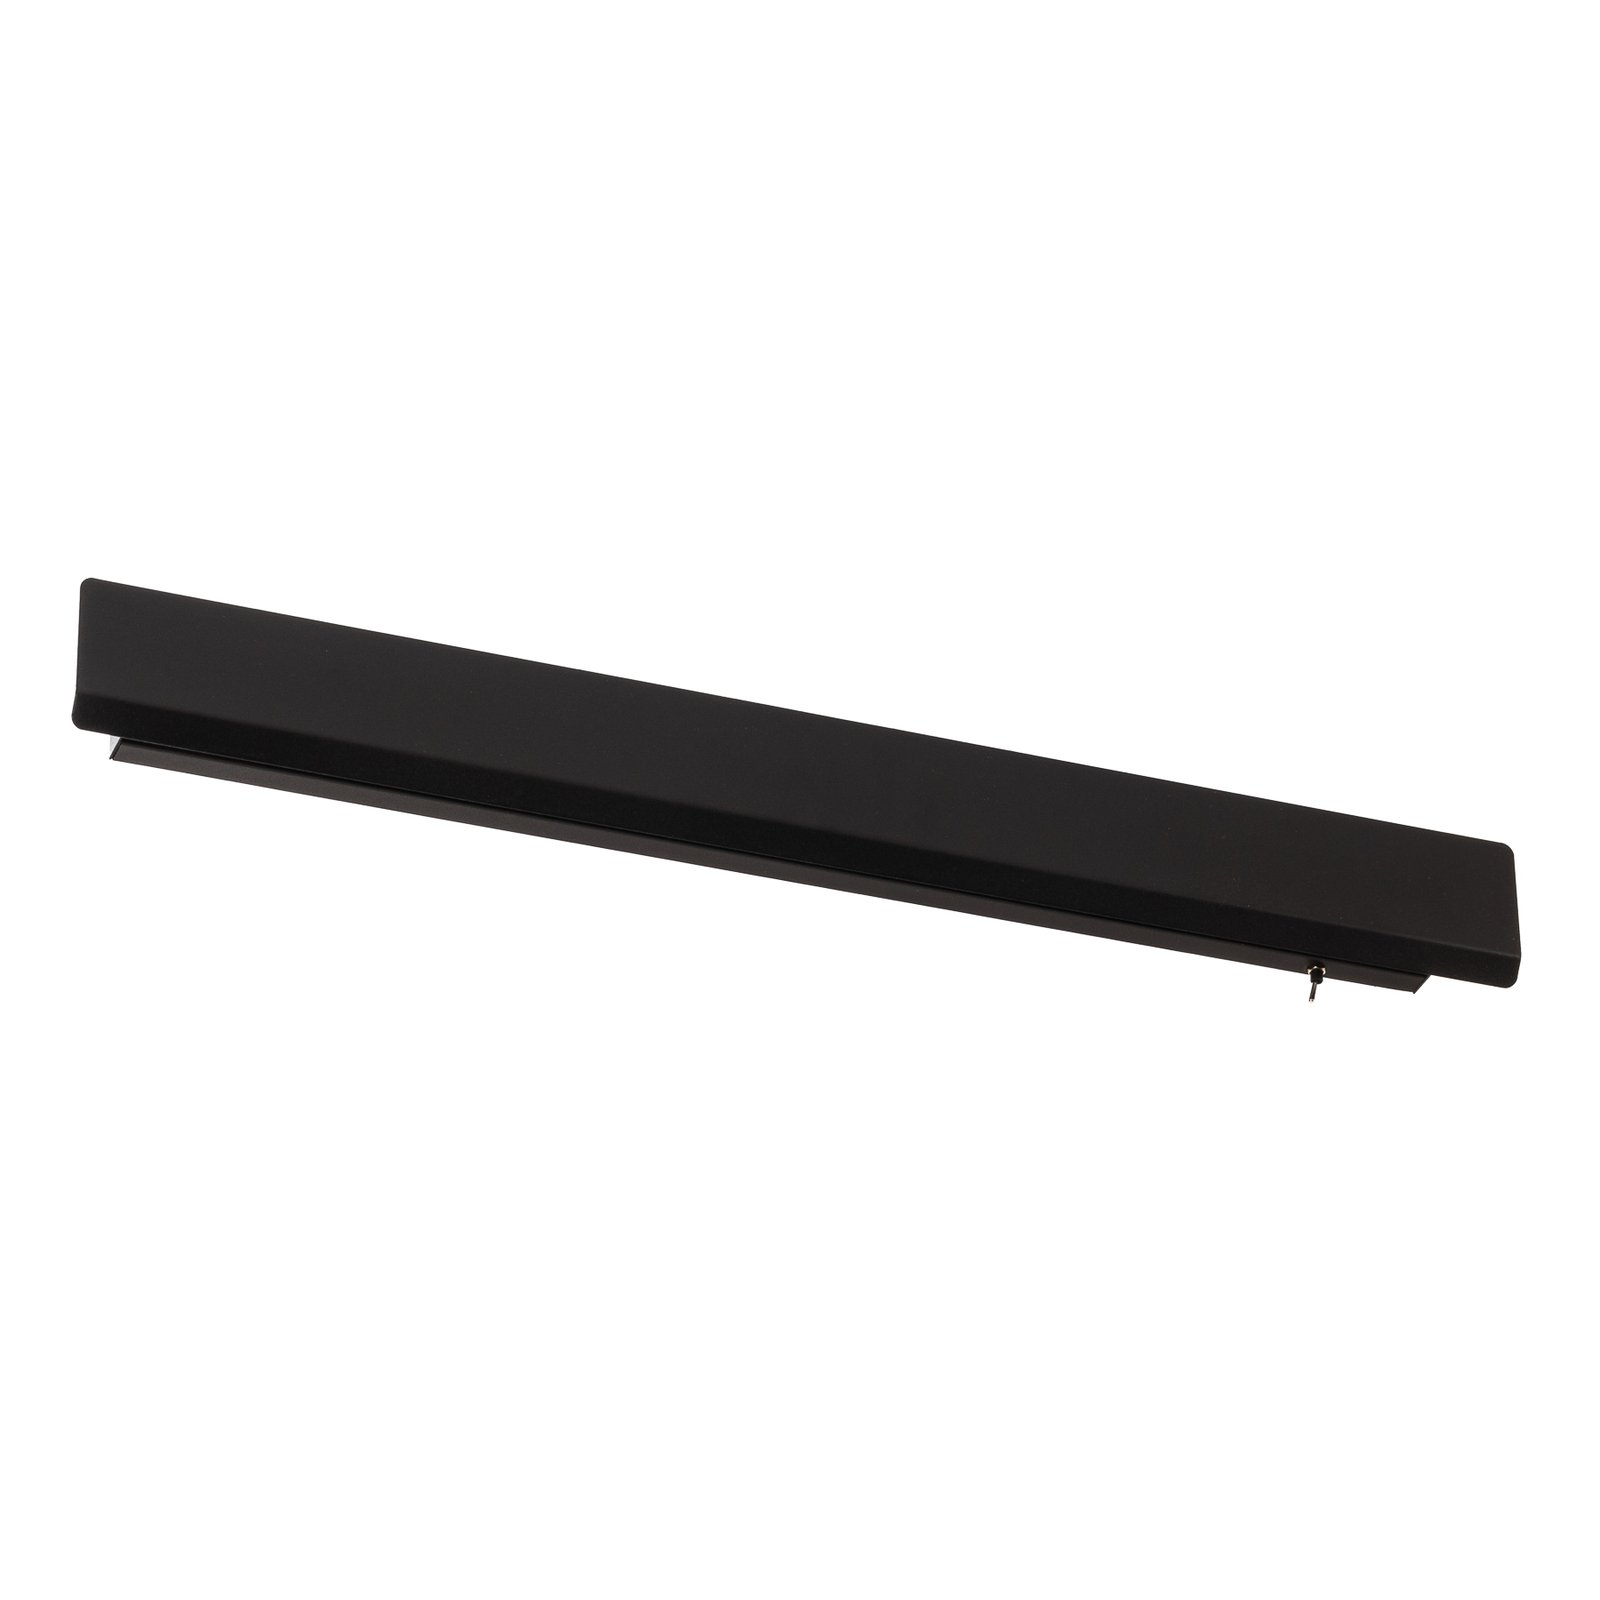 Wandlampe Wing, schwarz, Stahl, Schalter, 68 cm breit